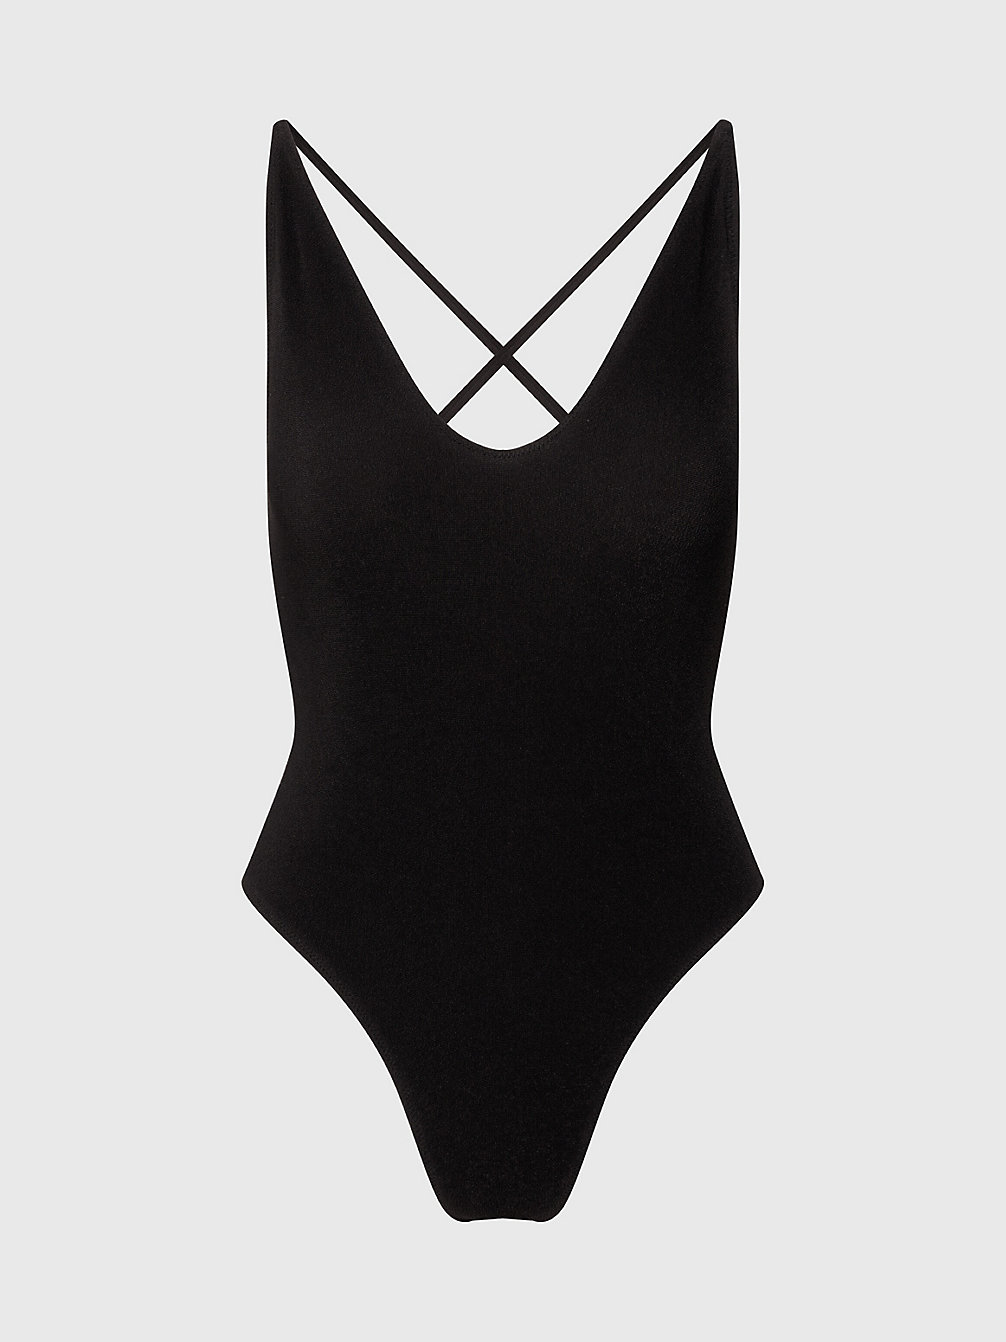 PVH BLACK > Strój Kąpielowy Ze Skrzyżowanym Tyłem - CK Texture > undefined Kobiety - Calvin Klein